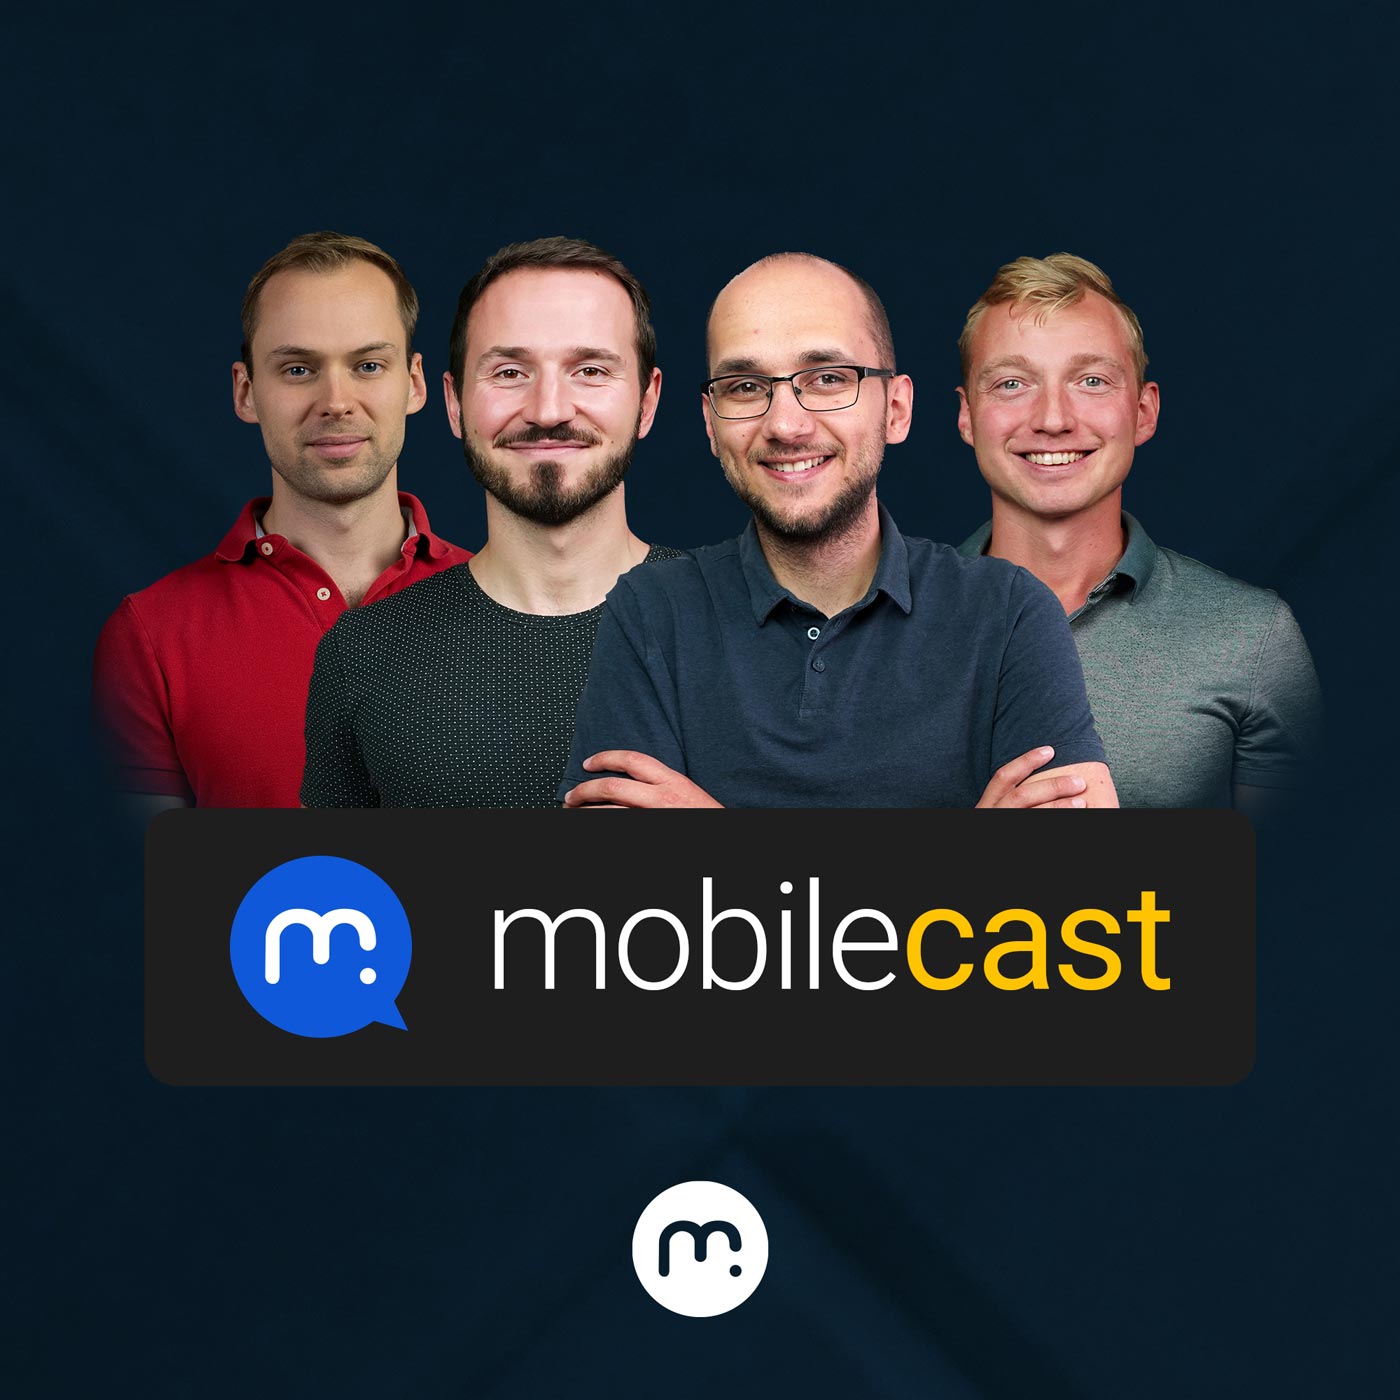 mobilecast (audio)